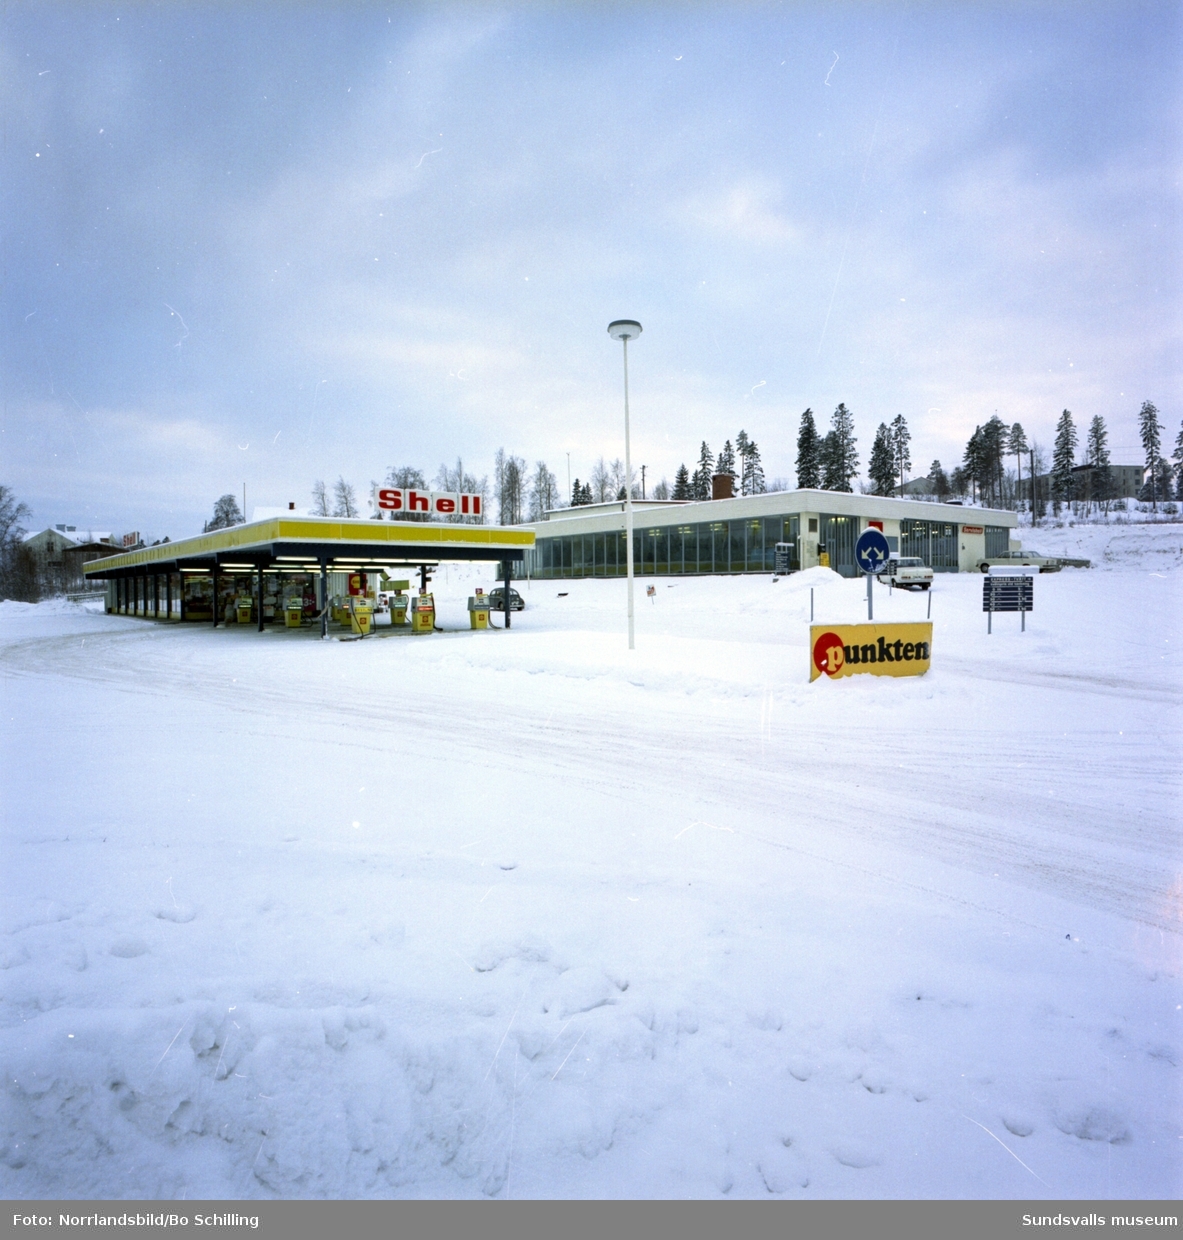 Shell Punkten i Bydalen, exteriör- och interiörbilder från verkstaden och tvätthallen.